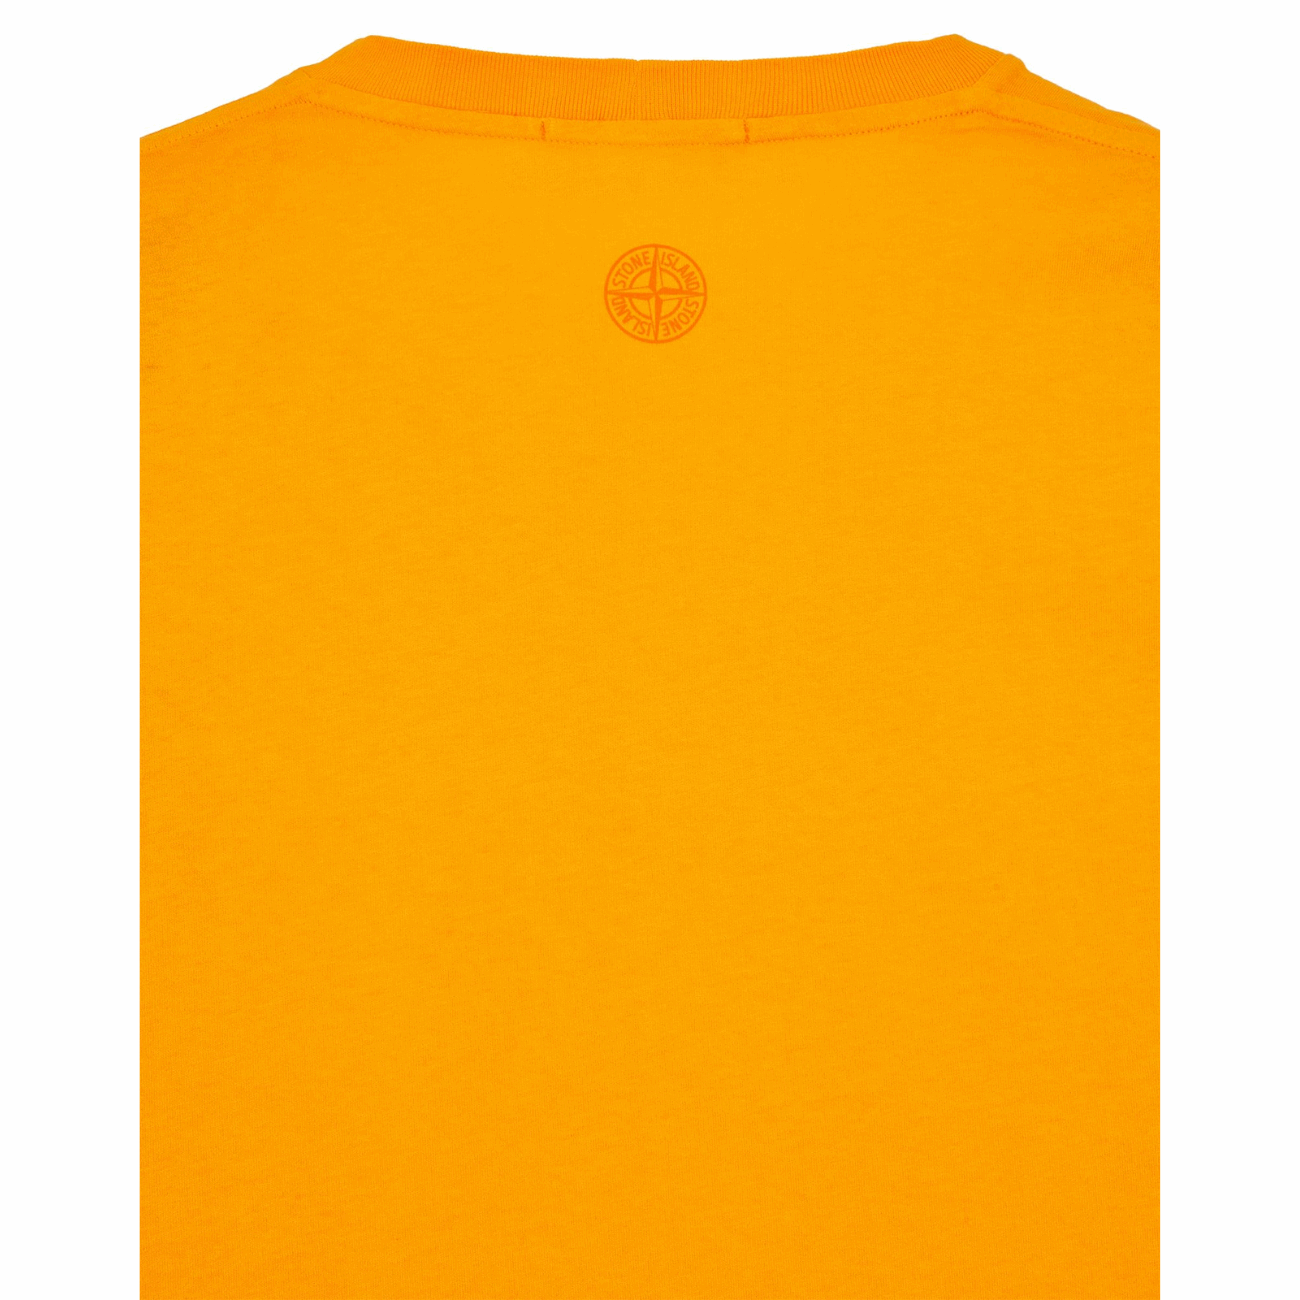 Stone Island 78152NS92V0032 2NS92 'Abbreviation One' Print Men's T-Shirt, Orange